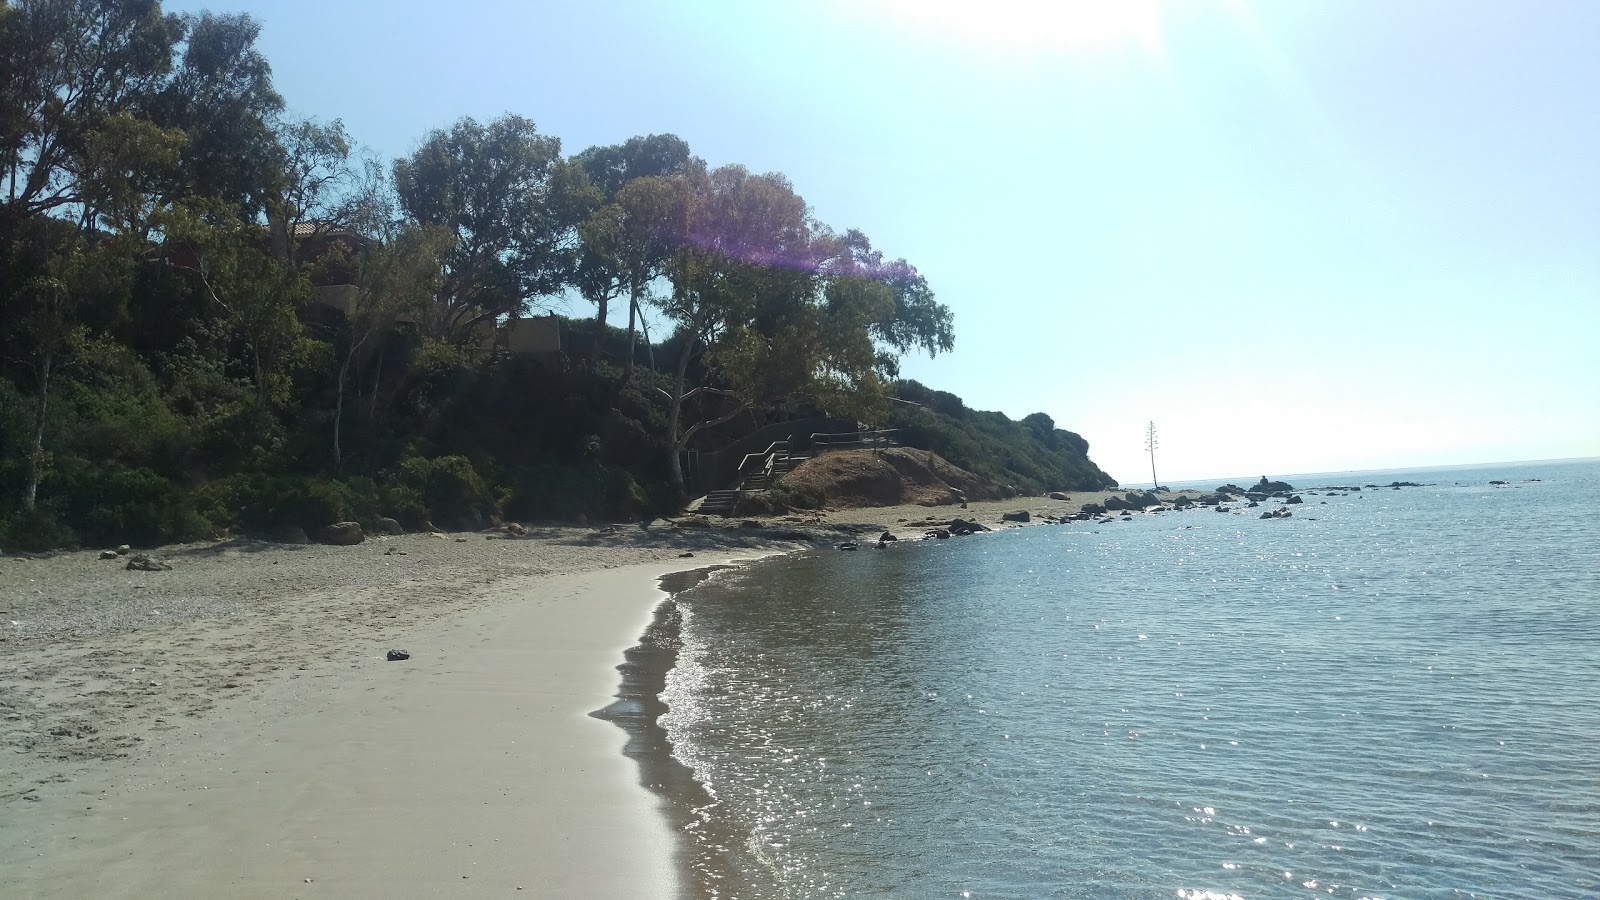 Foto von Playa Limite Cadiz, Malaga mit grauer sand Oberfläche